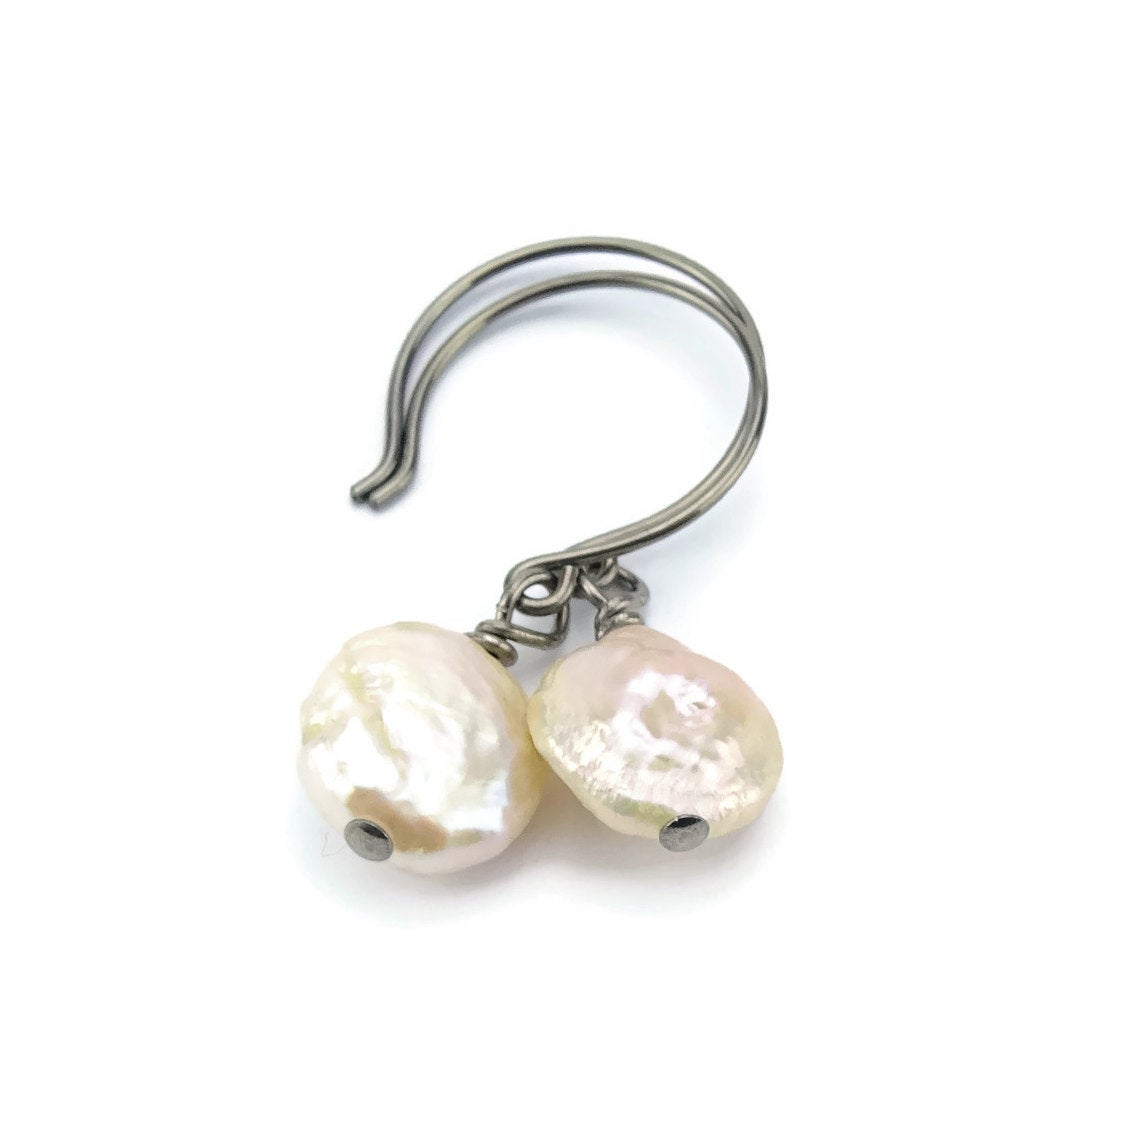 Ivory Coin Pearl Niobium Earrings, Freshwater Pearls Nickel Free Earrings For Sensitive Ears, Hypoallergenic Titanium, White Pearl Earrings